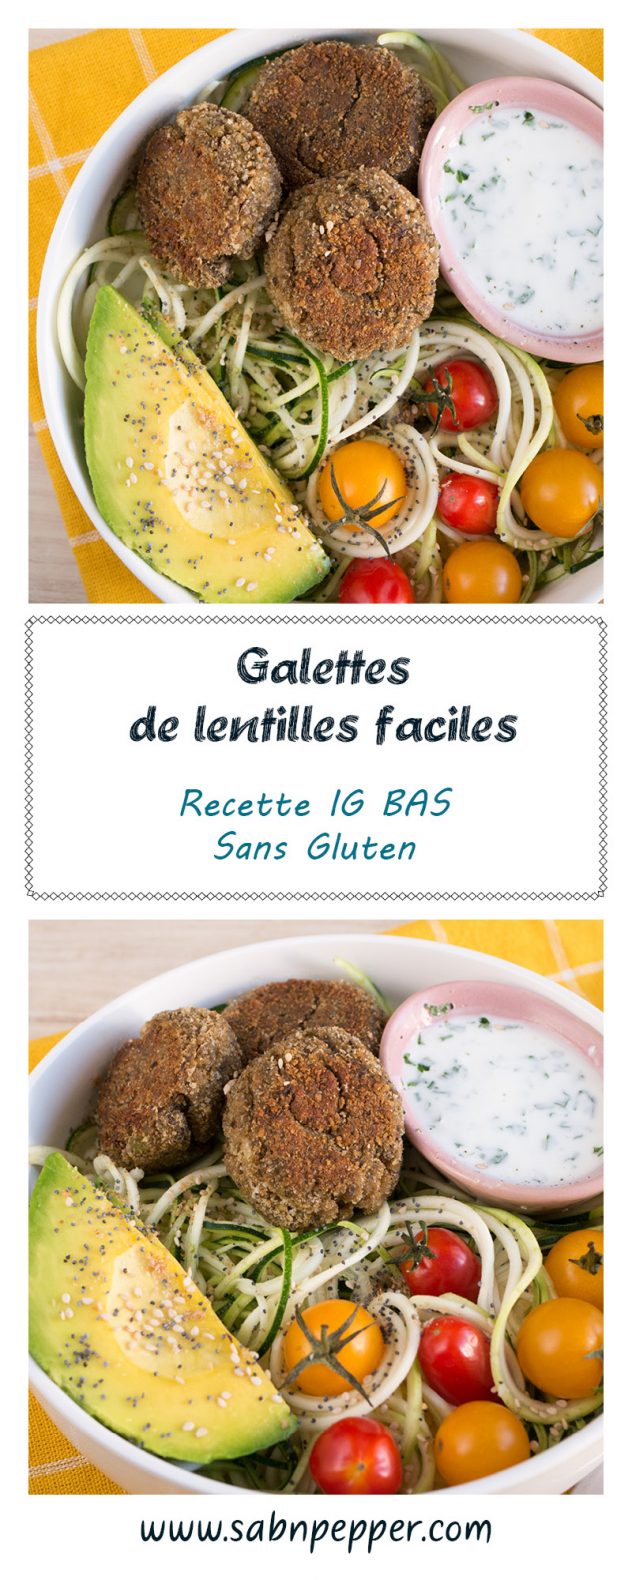 Galettes de lentilles vertes : une recette sansgluten, IGbas qui plaira à toute la famille #igbas #recette #sansgluten